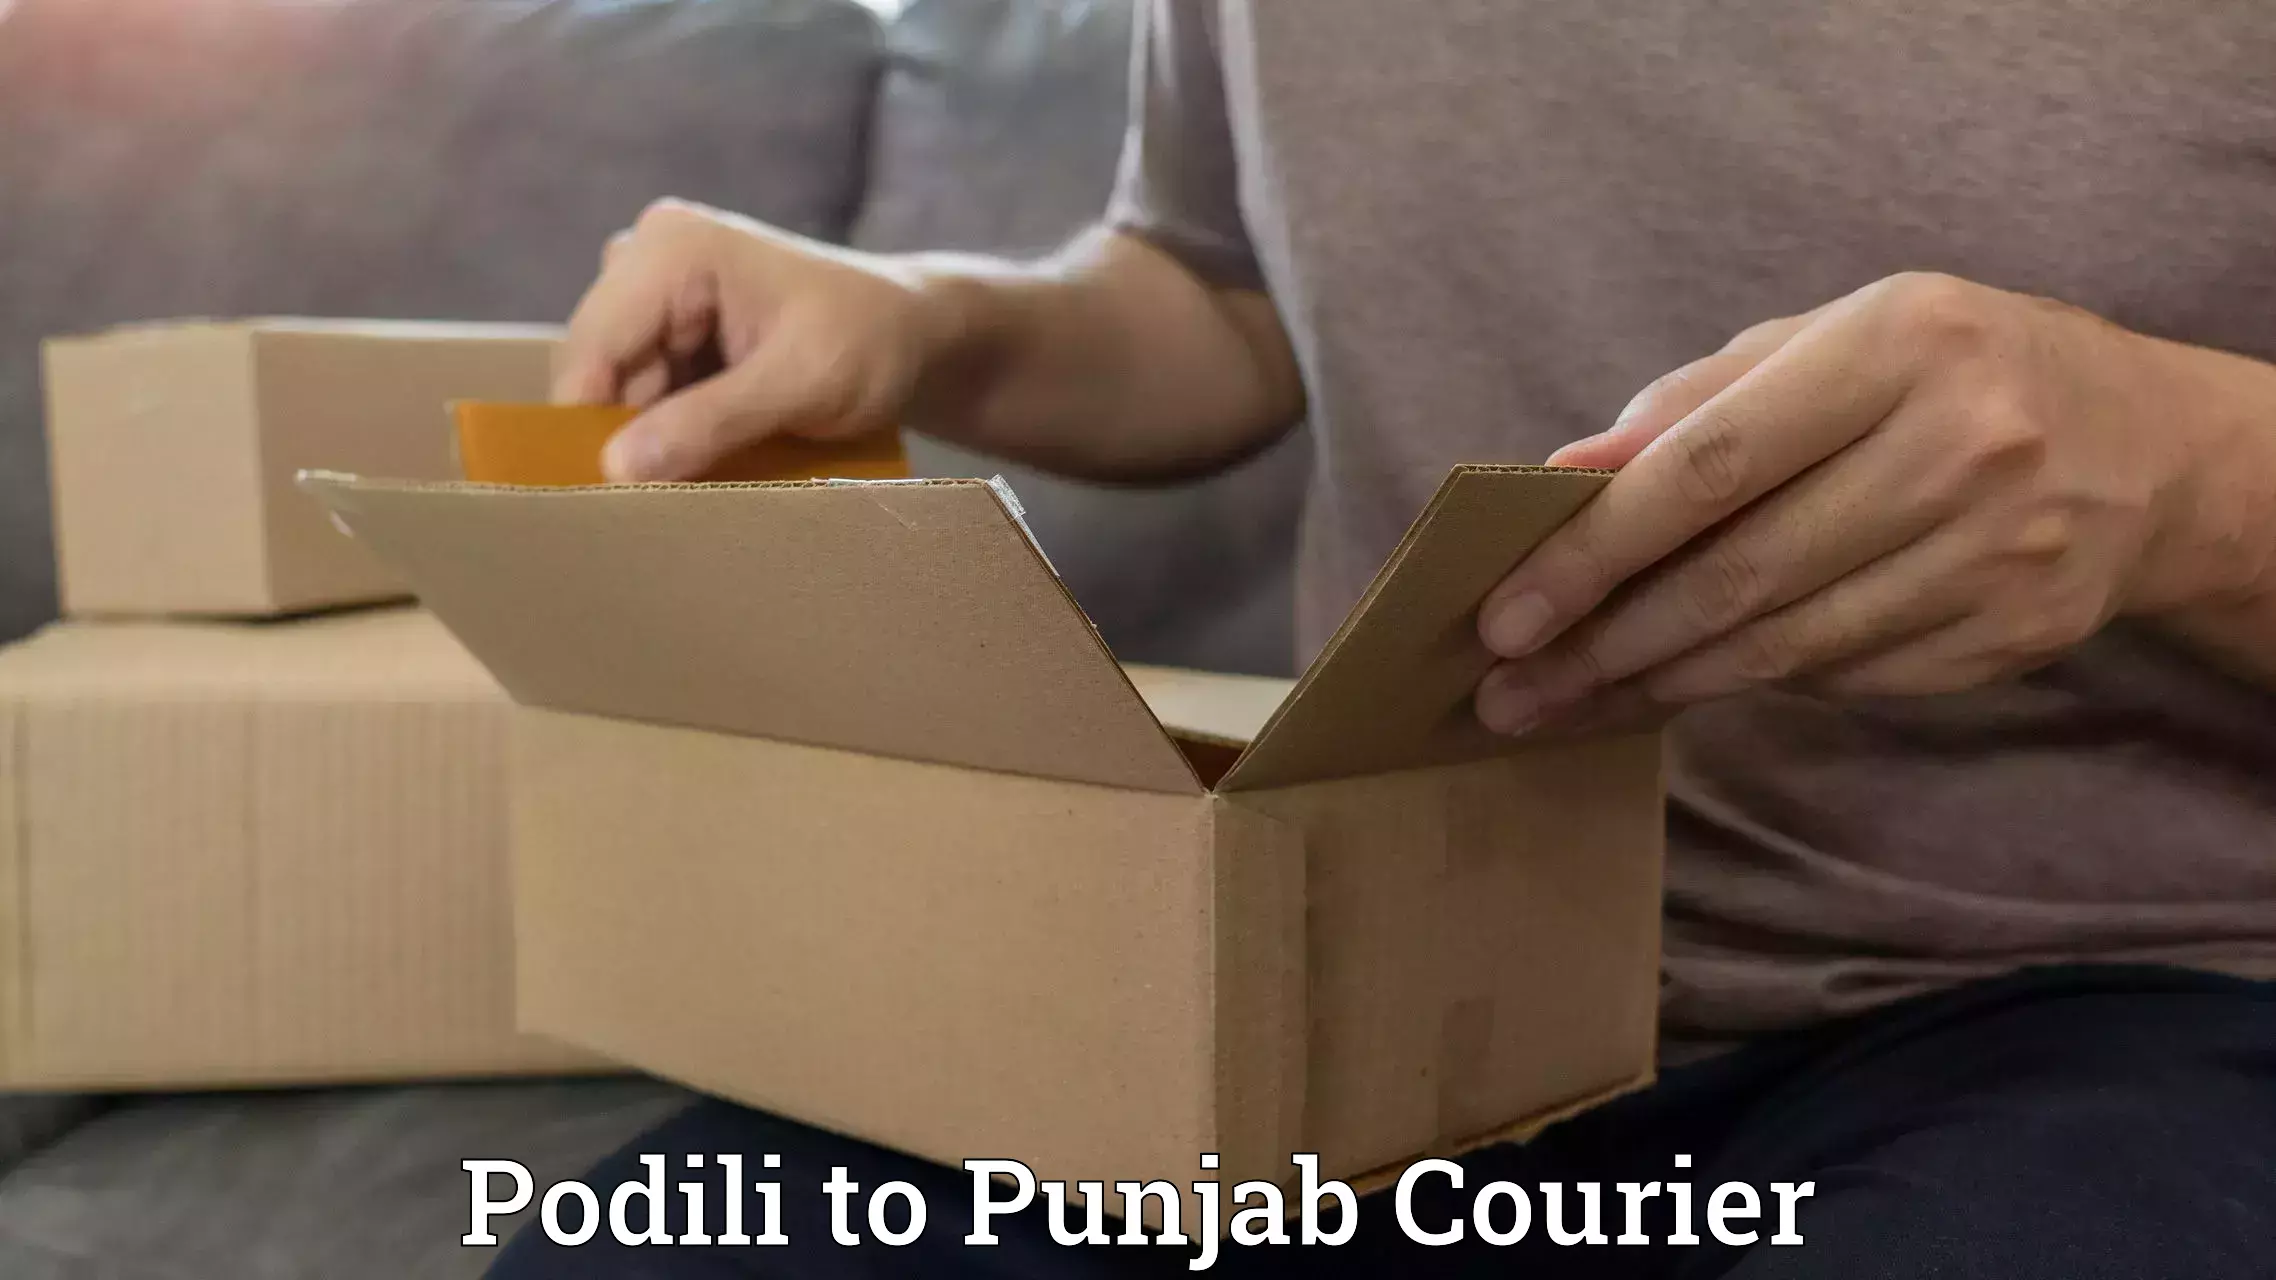 User-friendly delivery service Podili to Ludhiana